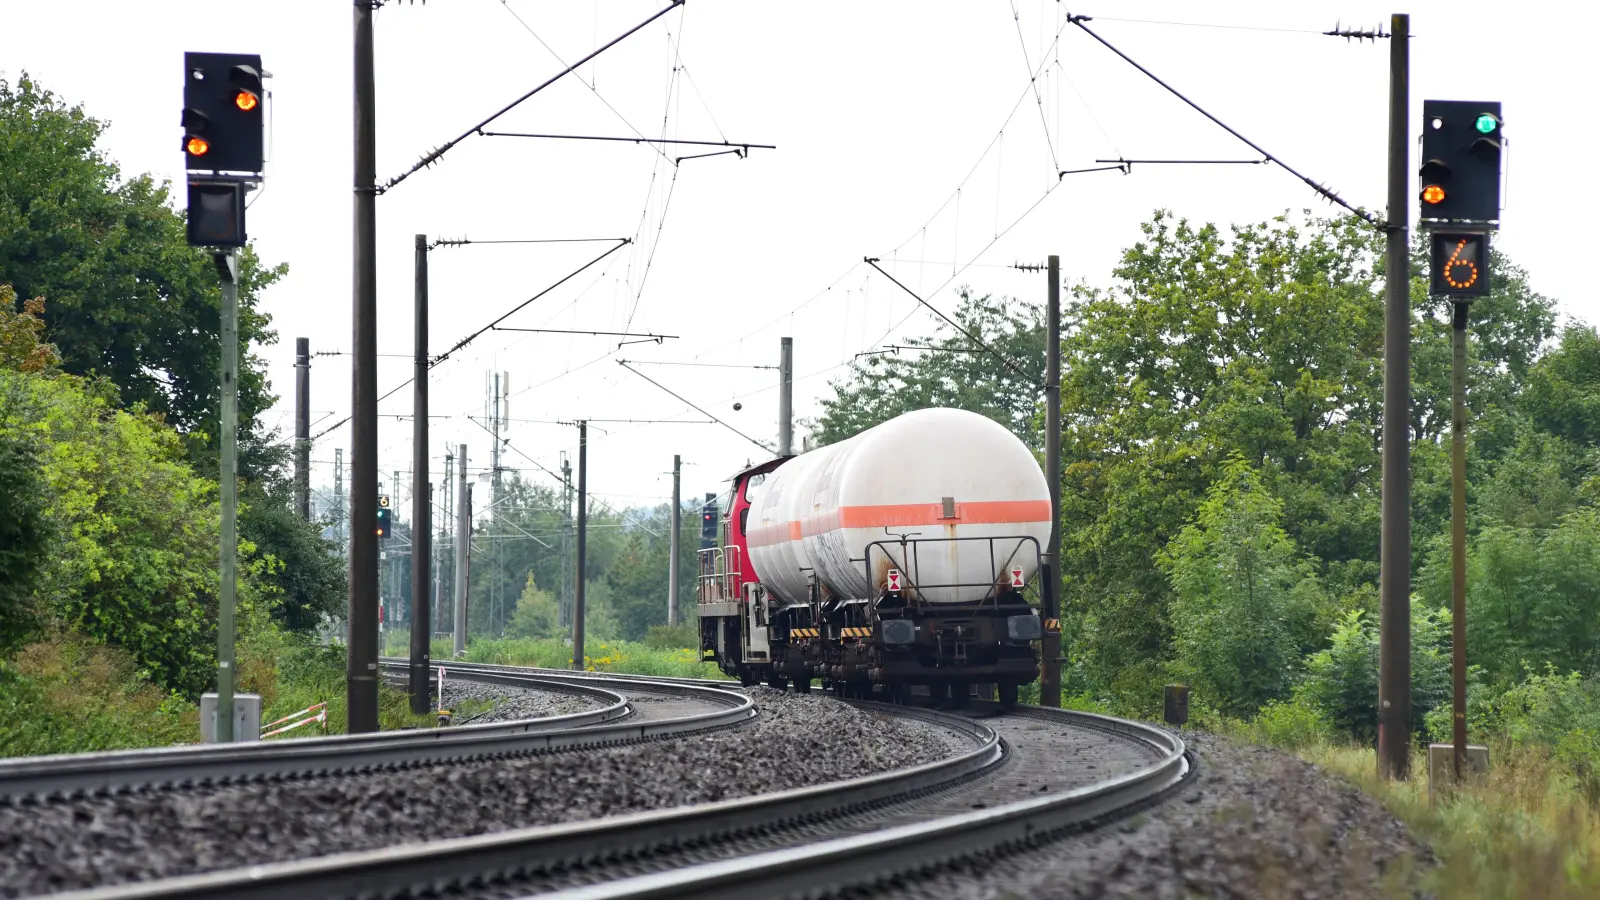 Noch spielt der Güterverkehr auf der Schiene in Westmittelfranken nur eine kleine Rolle, aber ein neues Terminal im geplanten Industriegebiet Interfranken könnte für Aufschwung sorgen. (Archivfoto: Jim Albright)